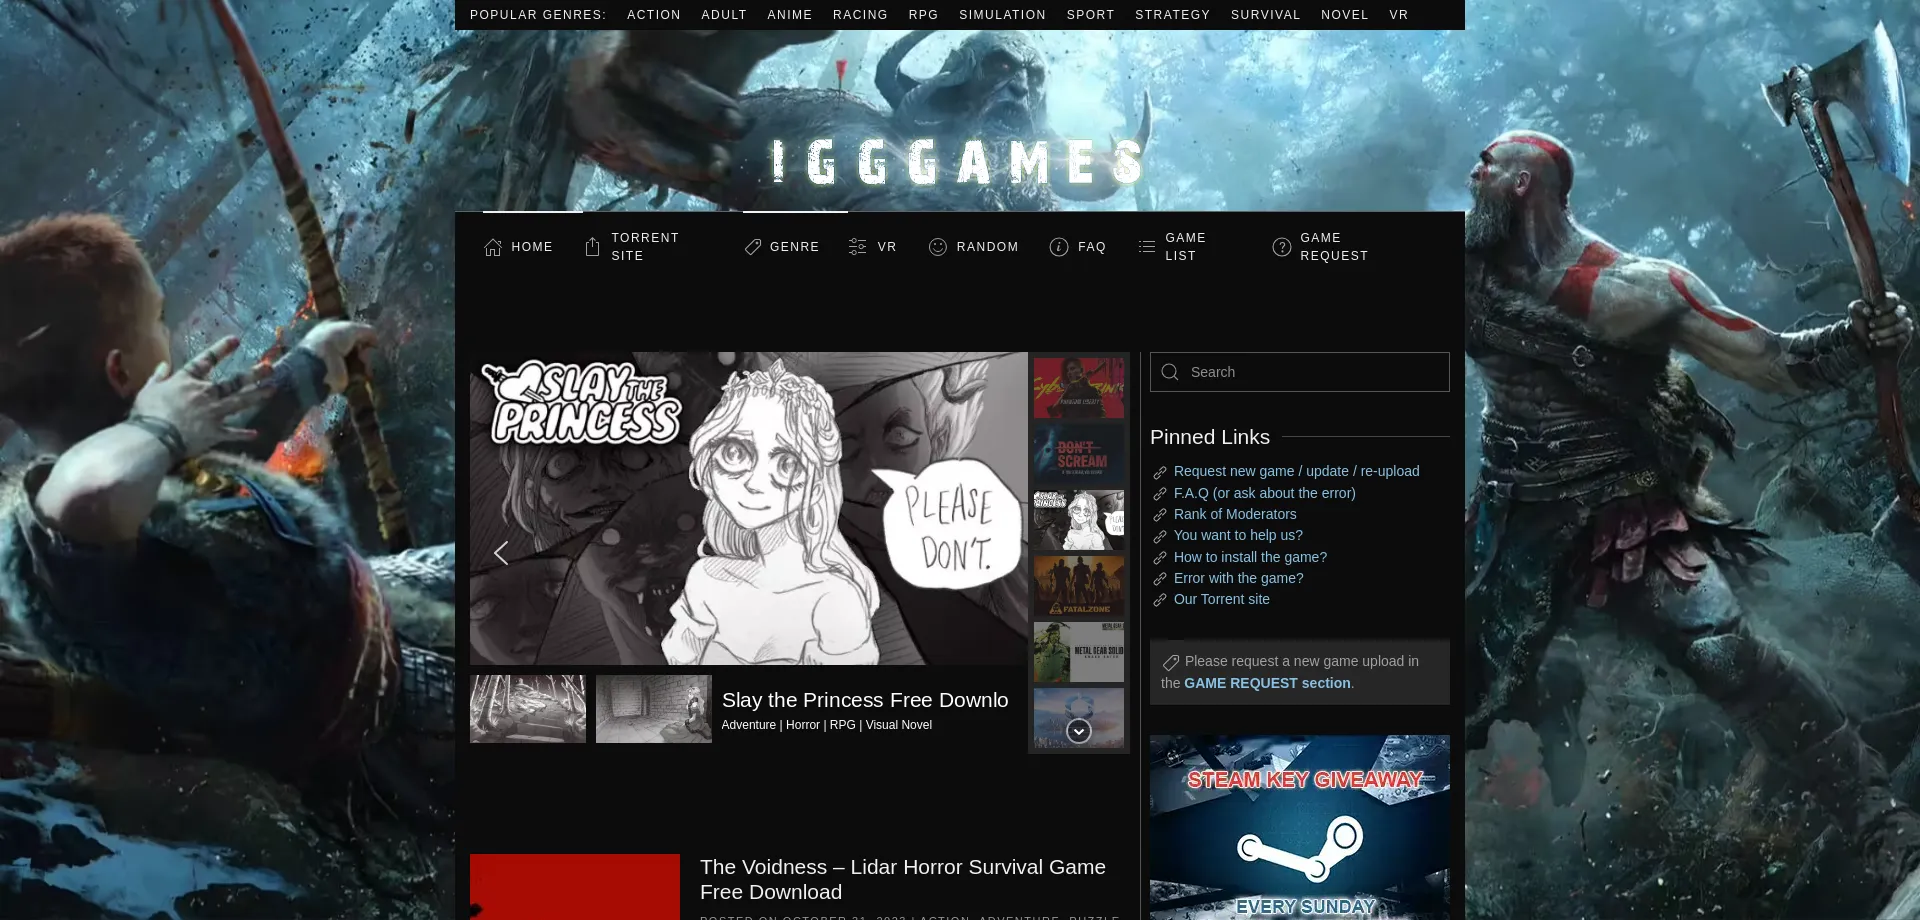 Igg-games.com